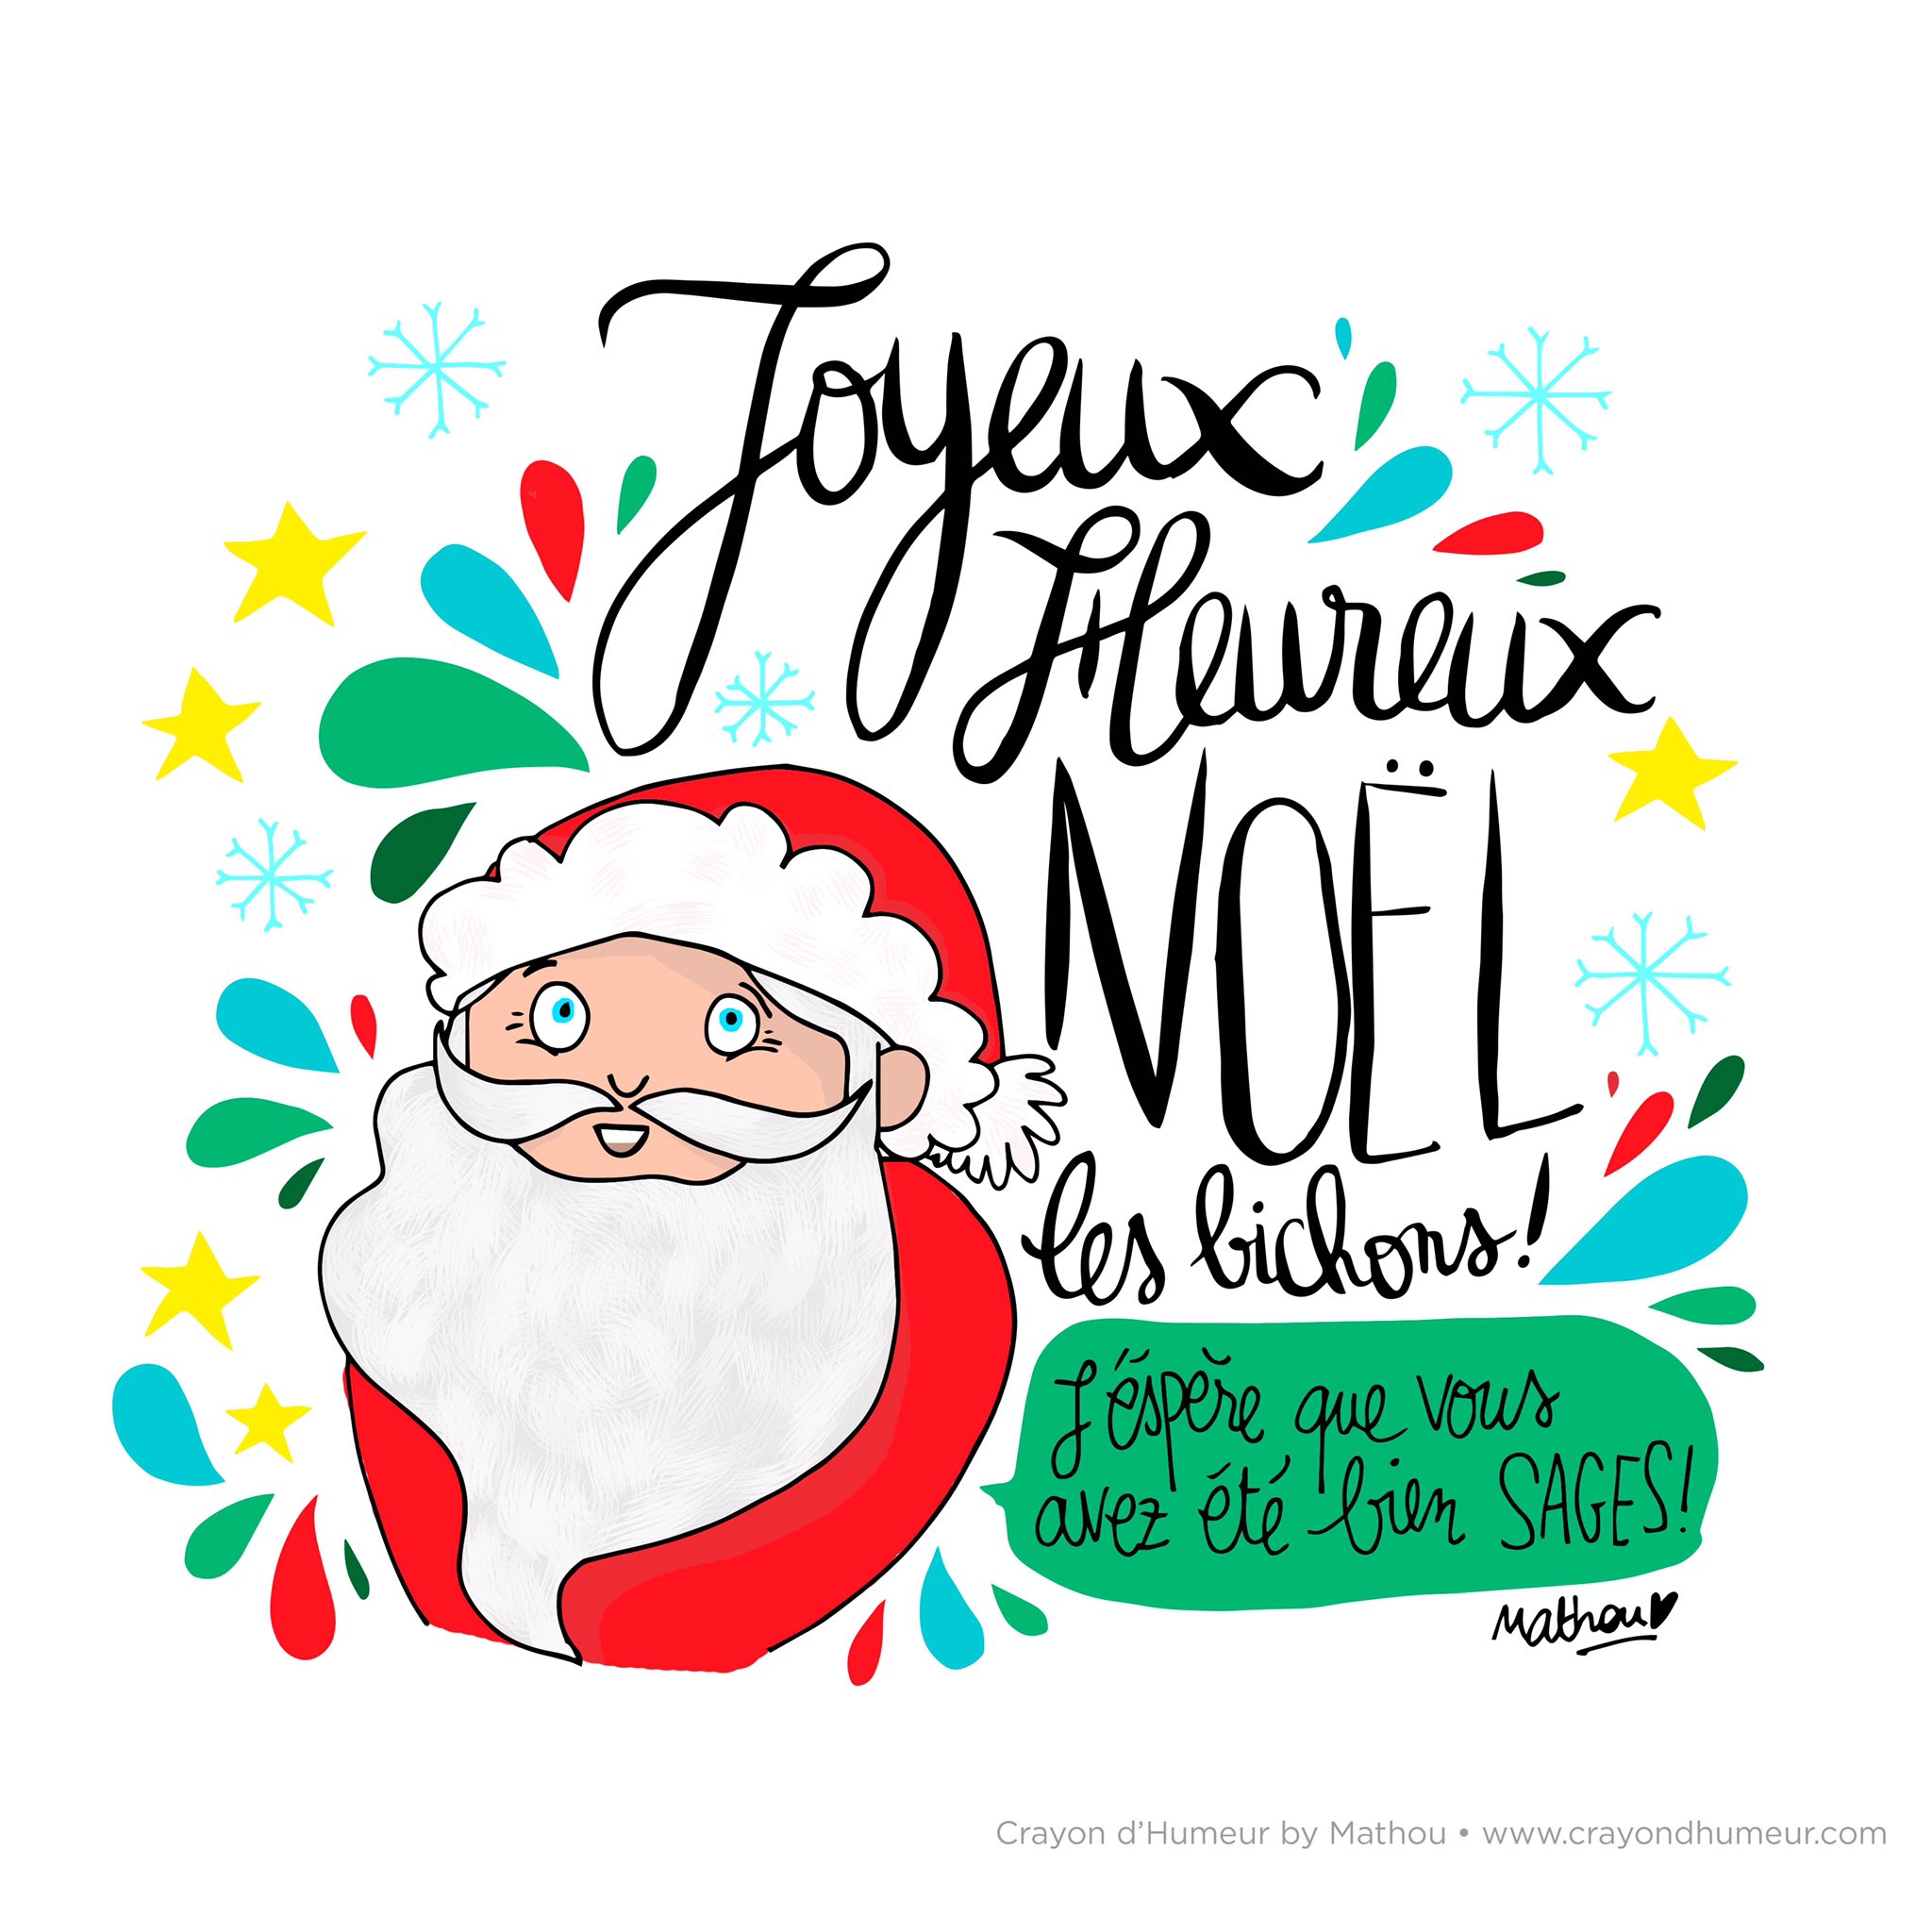 Mathou Virfollet on Twitter "{ JOYEUX NOËL } Joyeux Noël